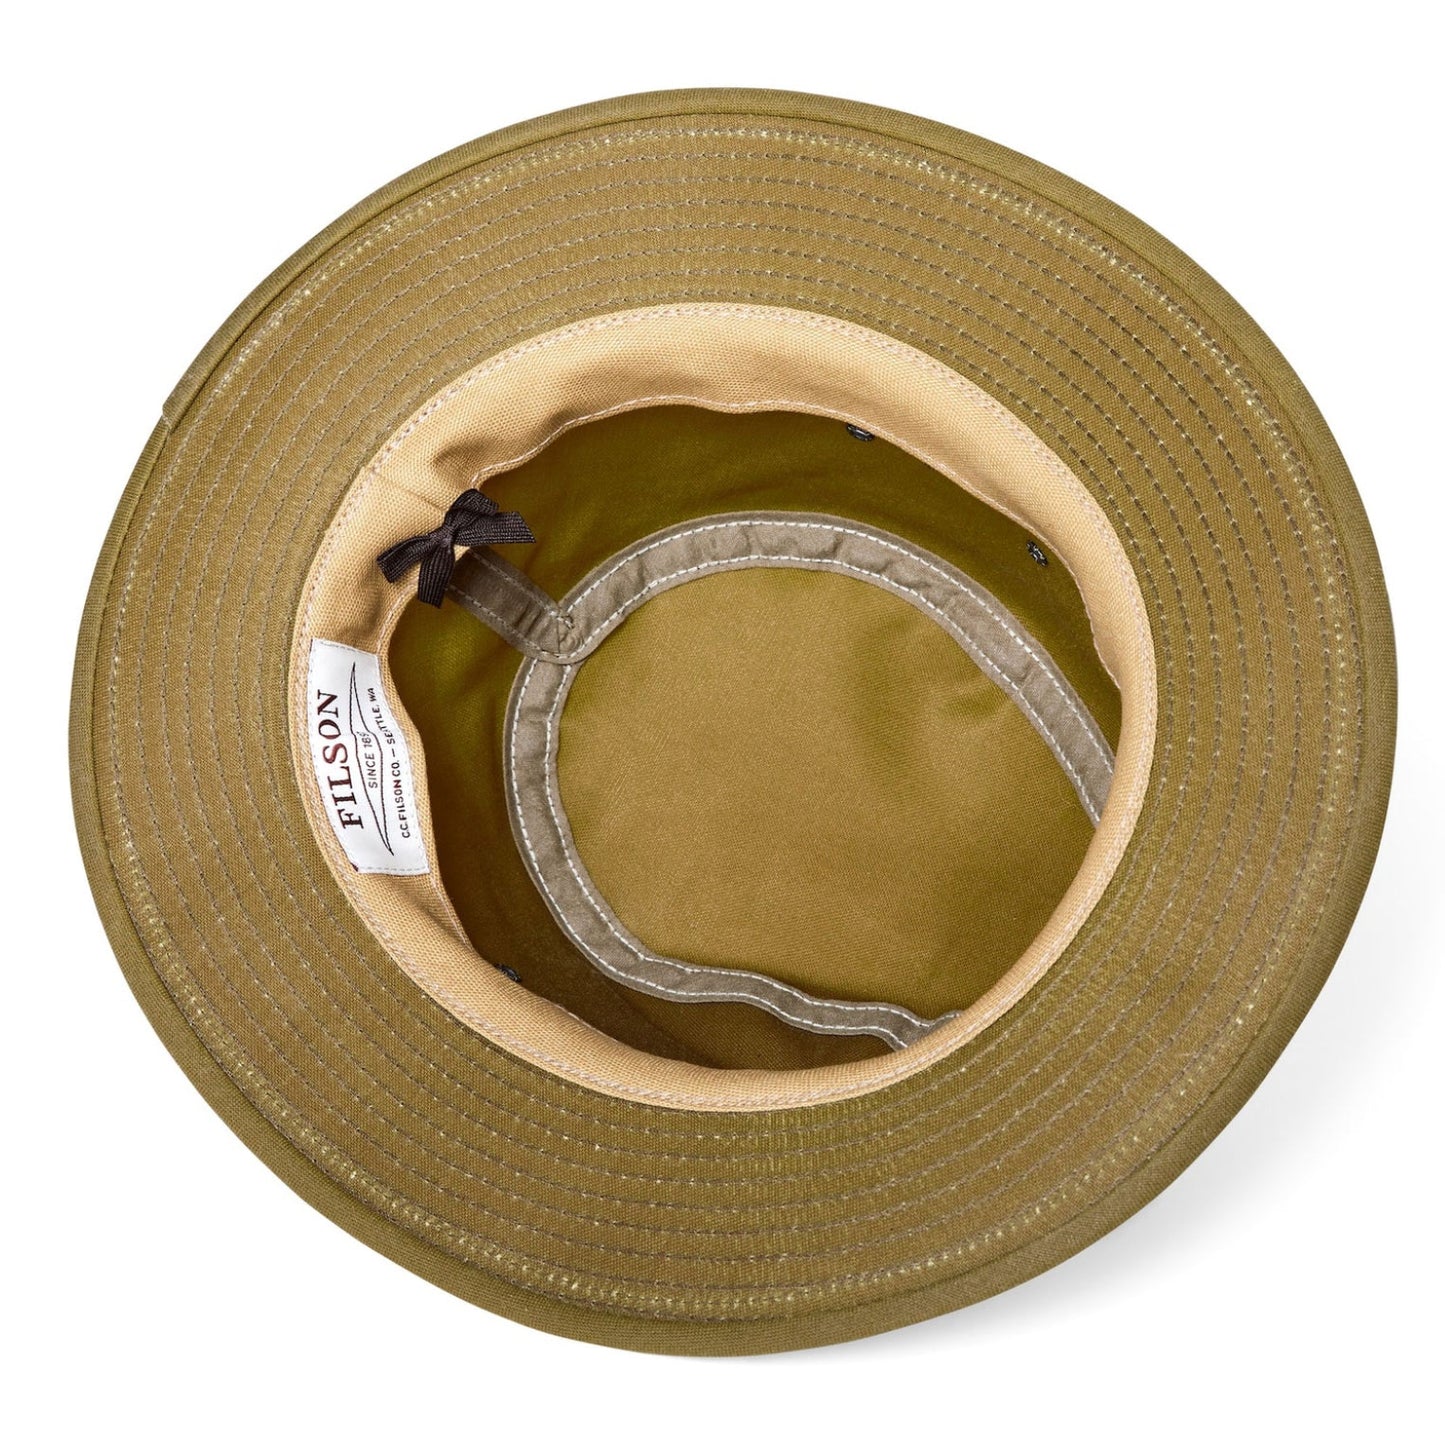 FILSON(フィルソン) Tin Cloth Packer Hat 11128